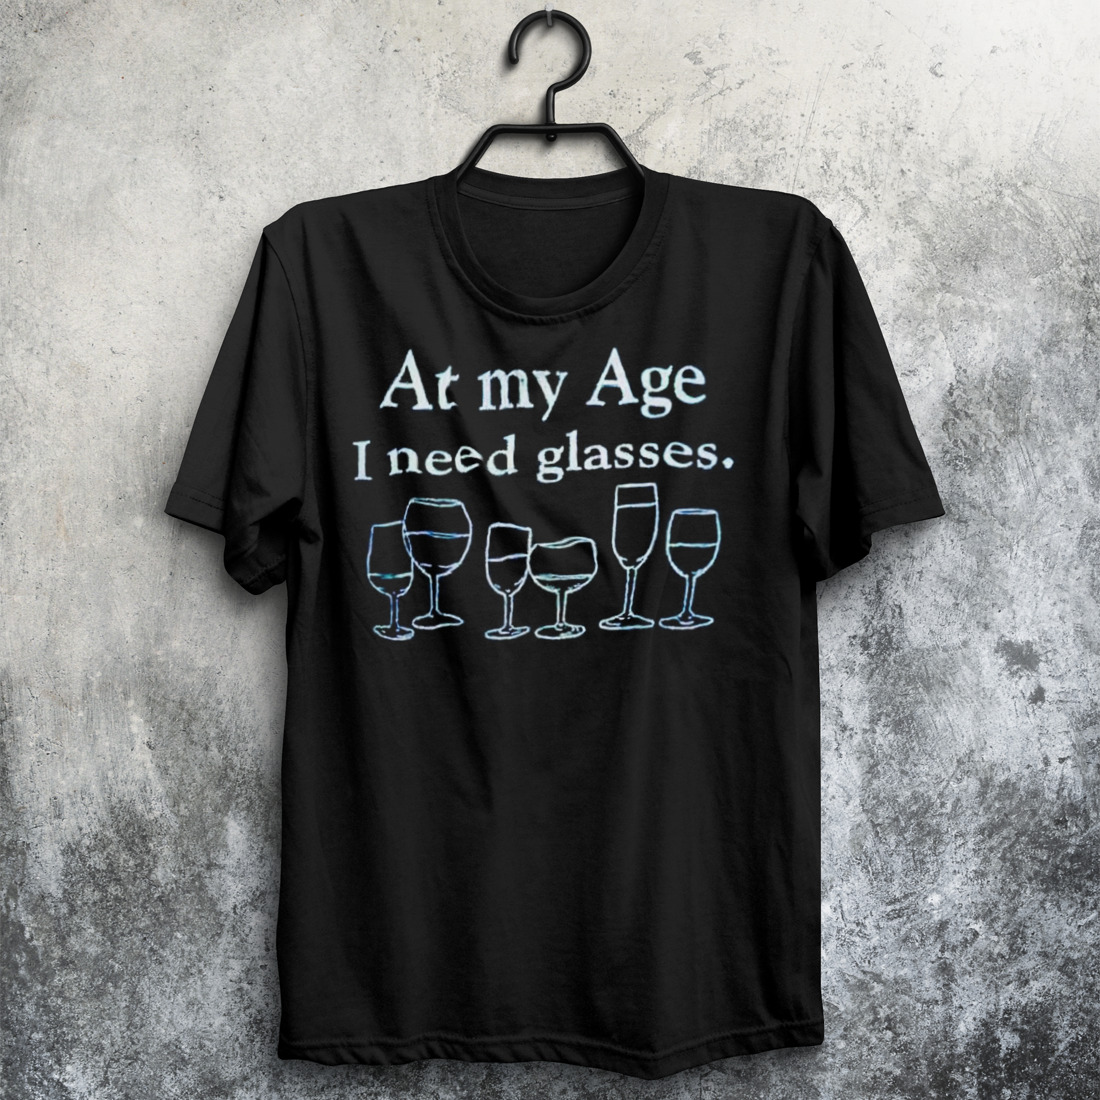 At my age i need glasses T-shirt